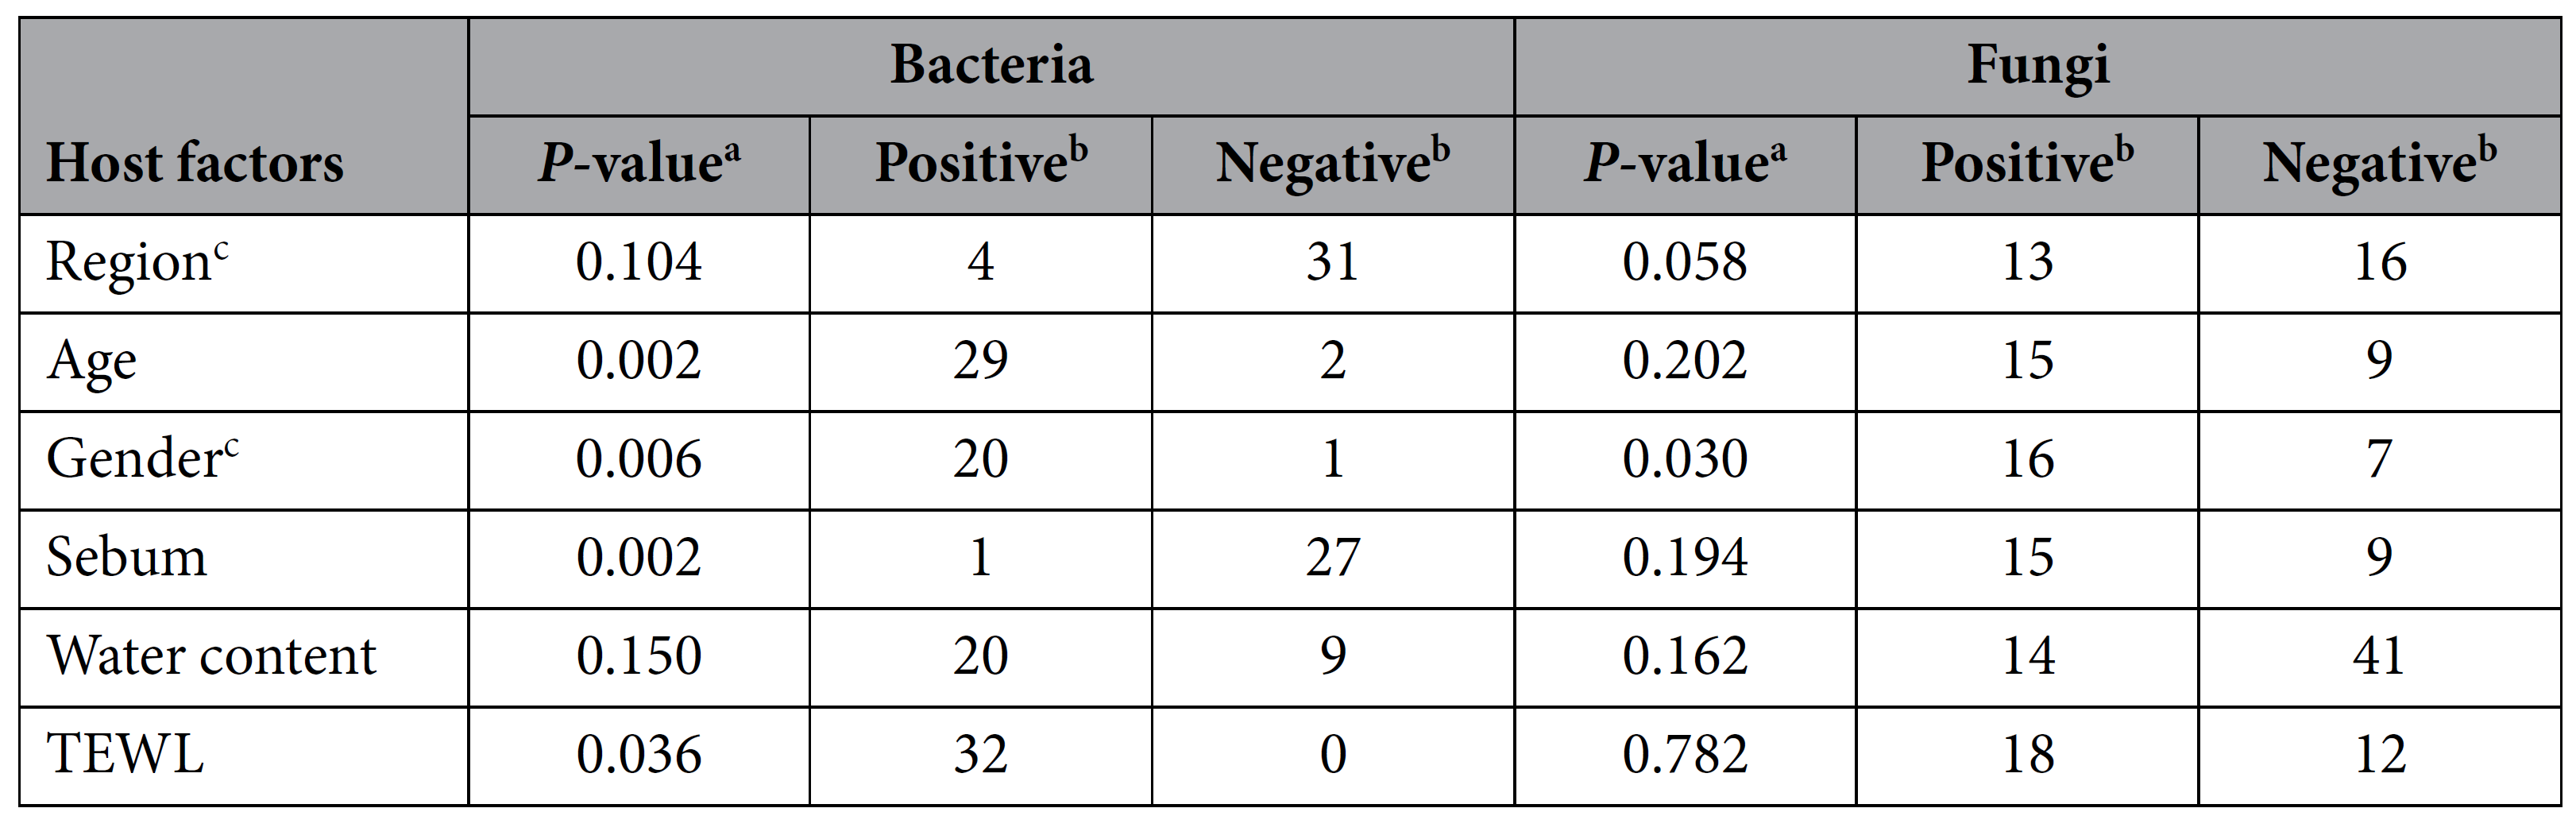 真菌细菌检测之影响因素间的系统关系